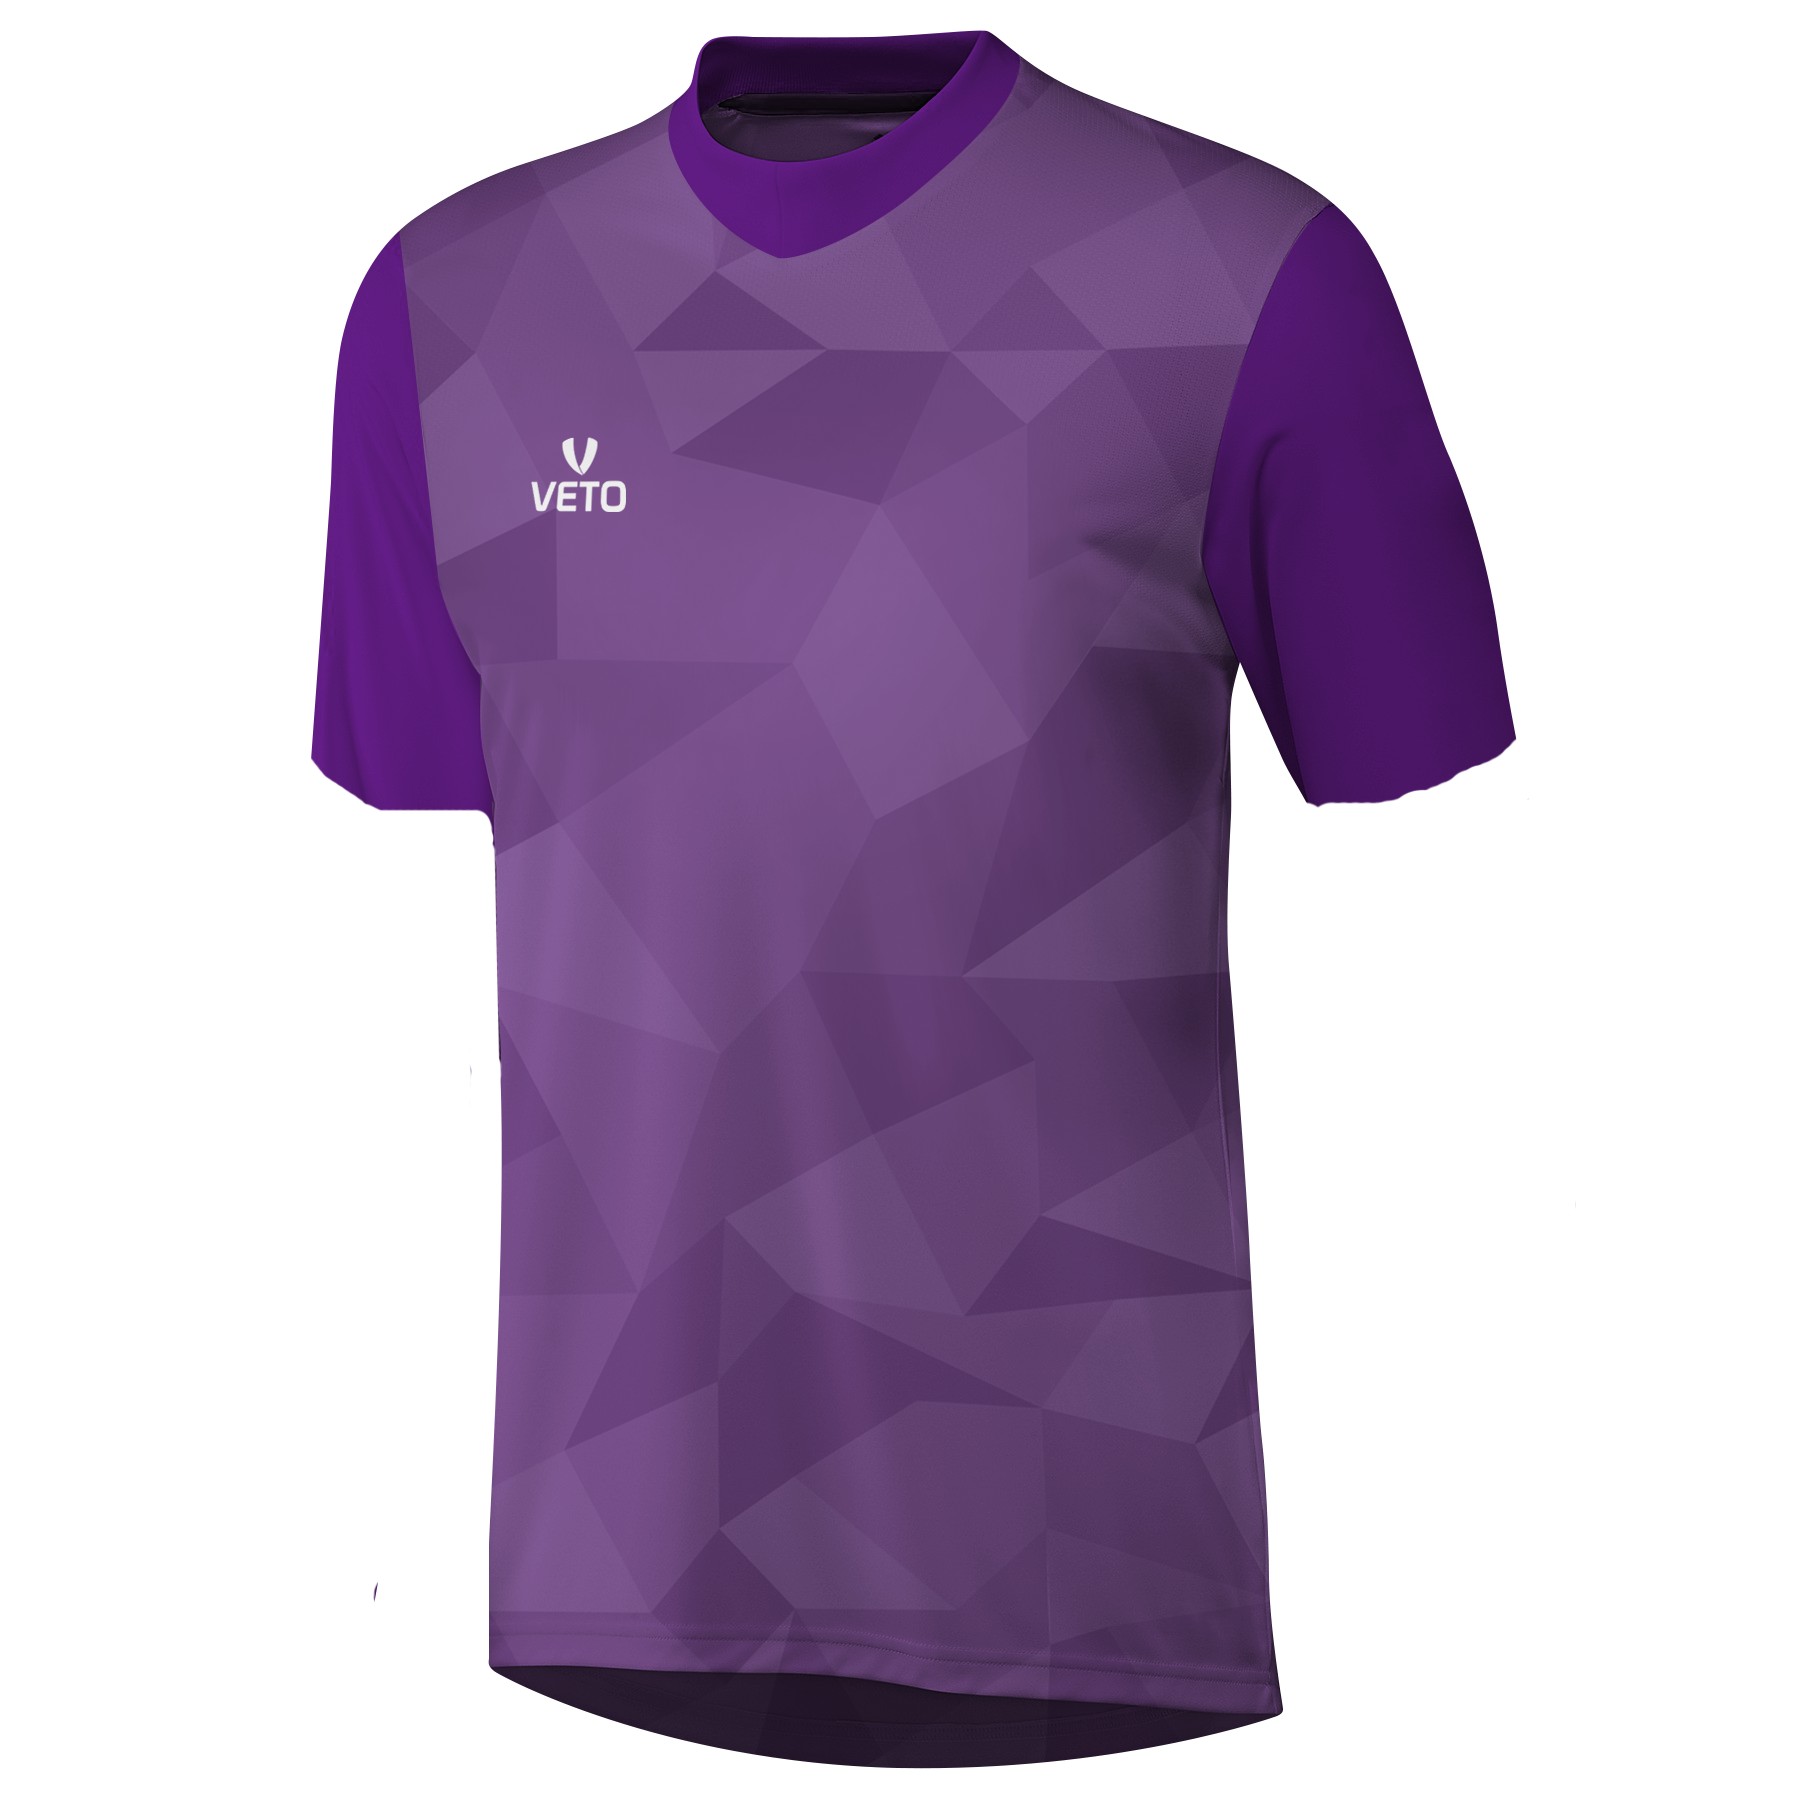 purple goalkeeper jersey